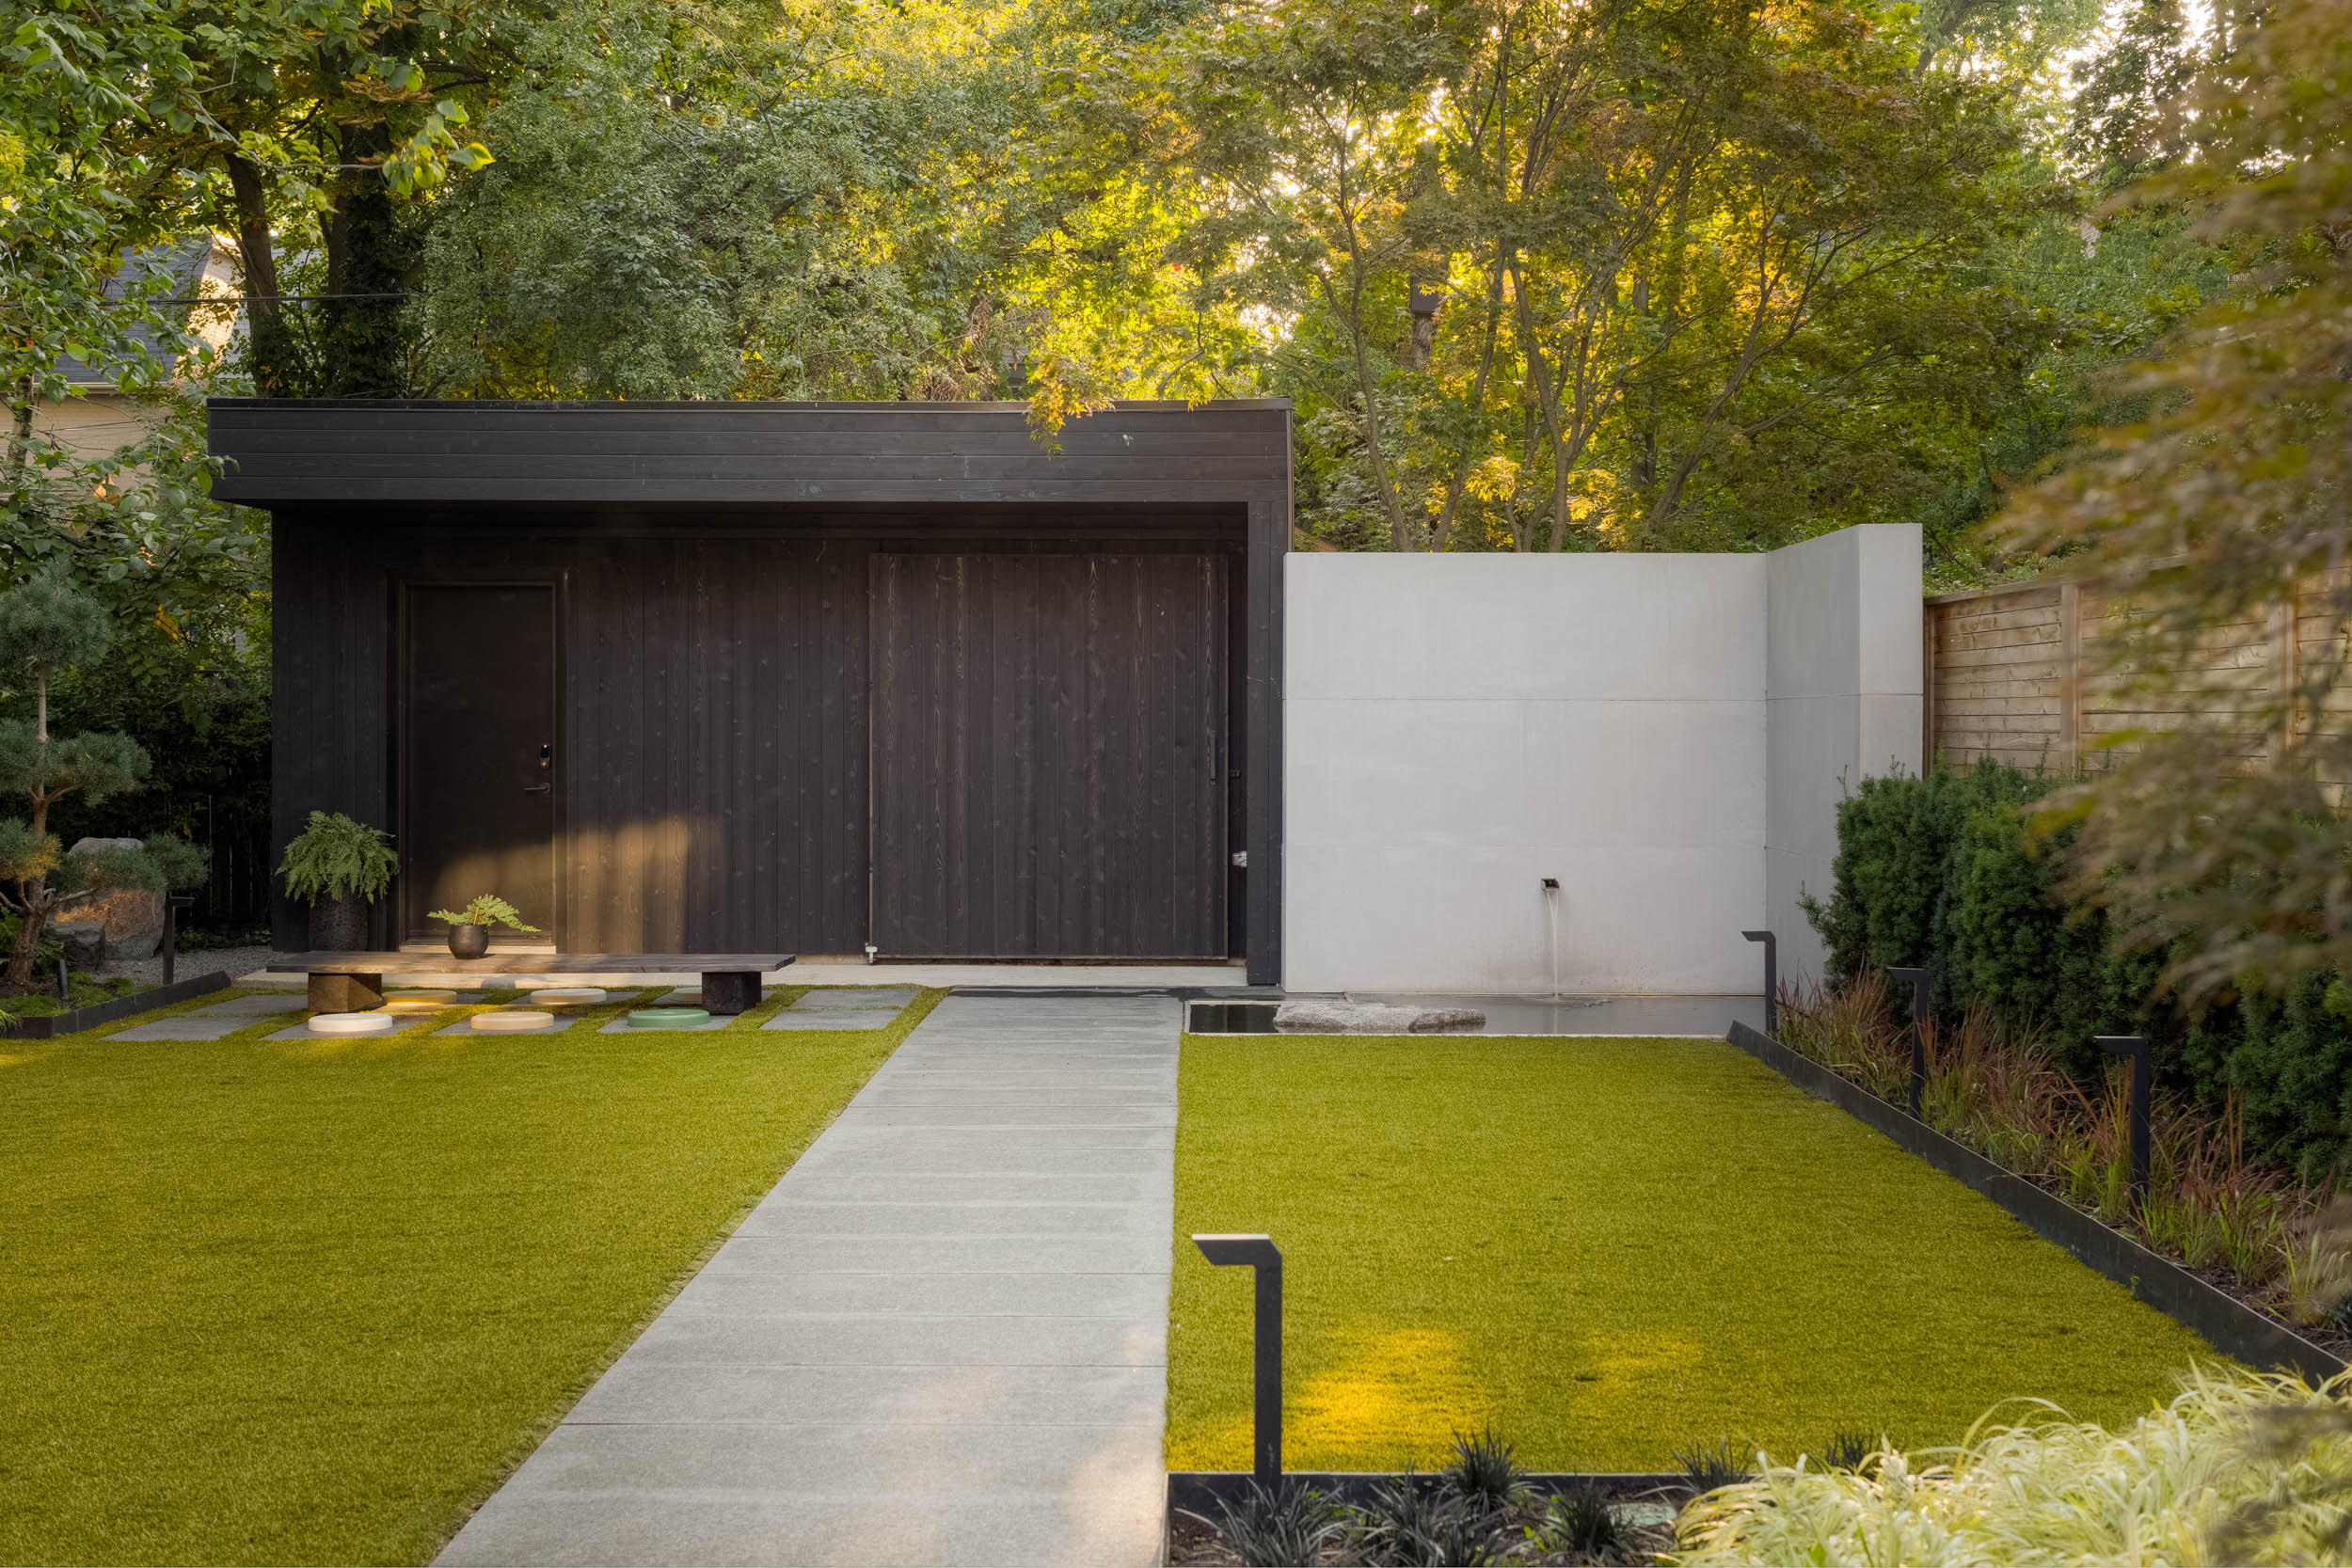 Zen garden with center path leading to garage